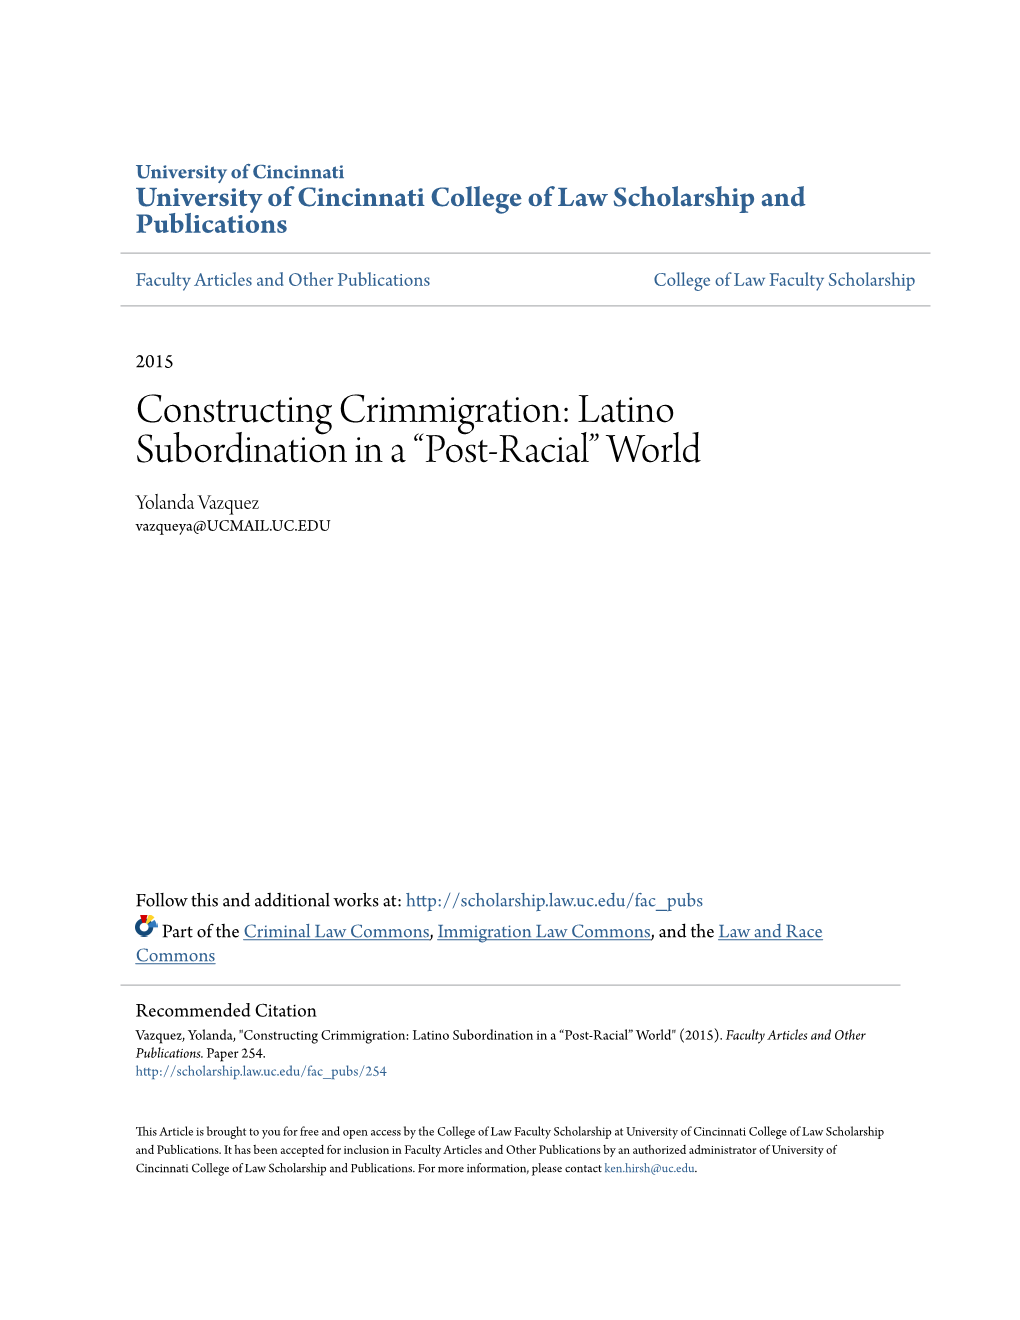 Constructing Crimmigration: Latino Subordination in a “Post-Racial” World Yolanda Vazquez Vazqueya@UCMAIL.UC.EDU